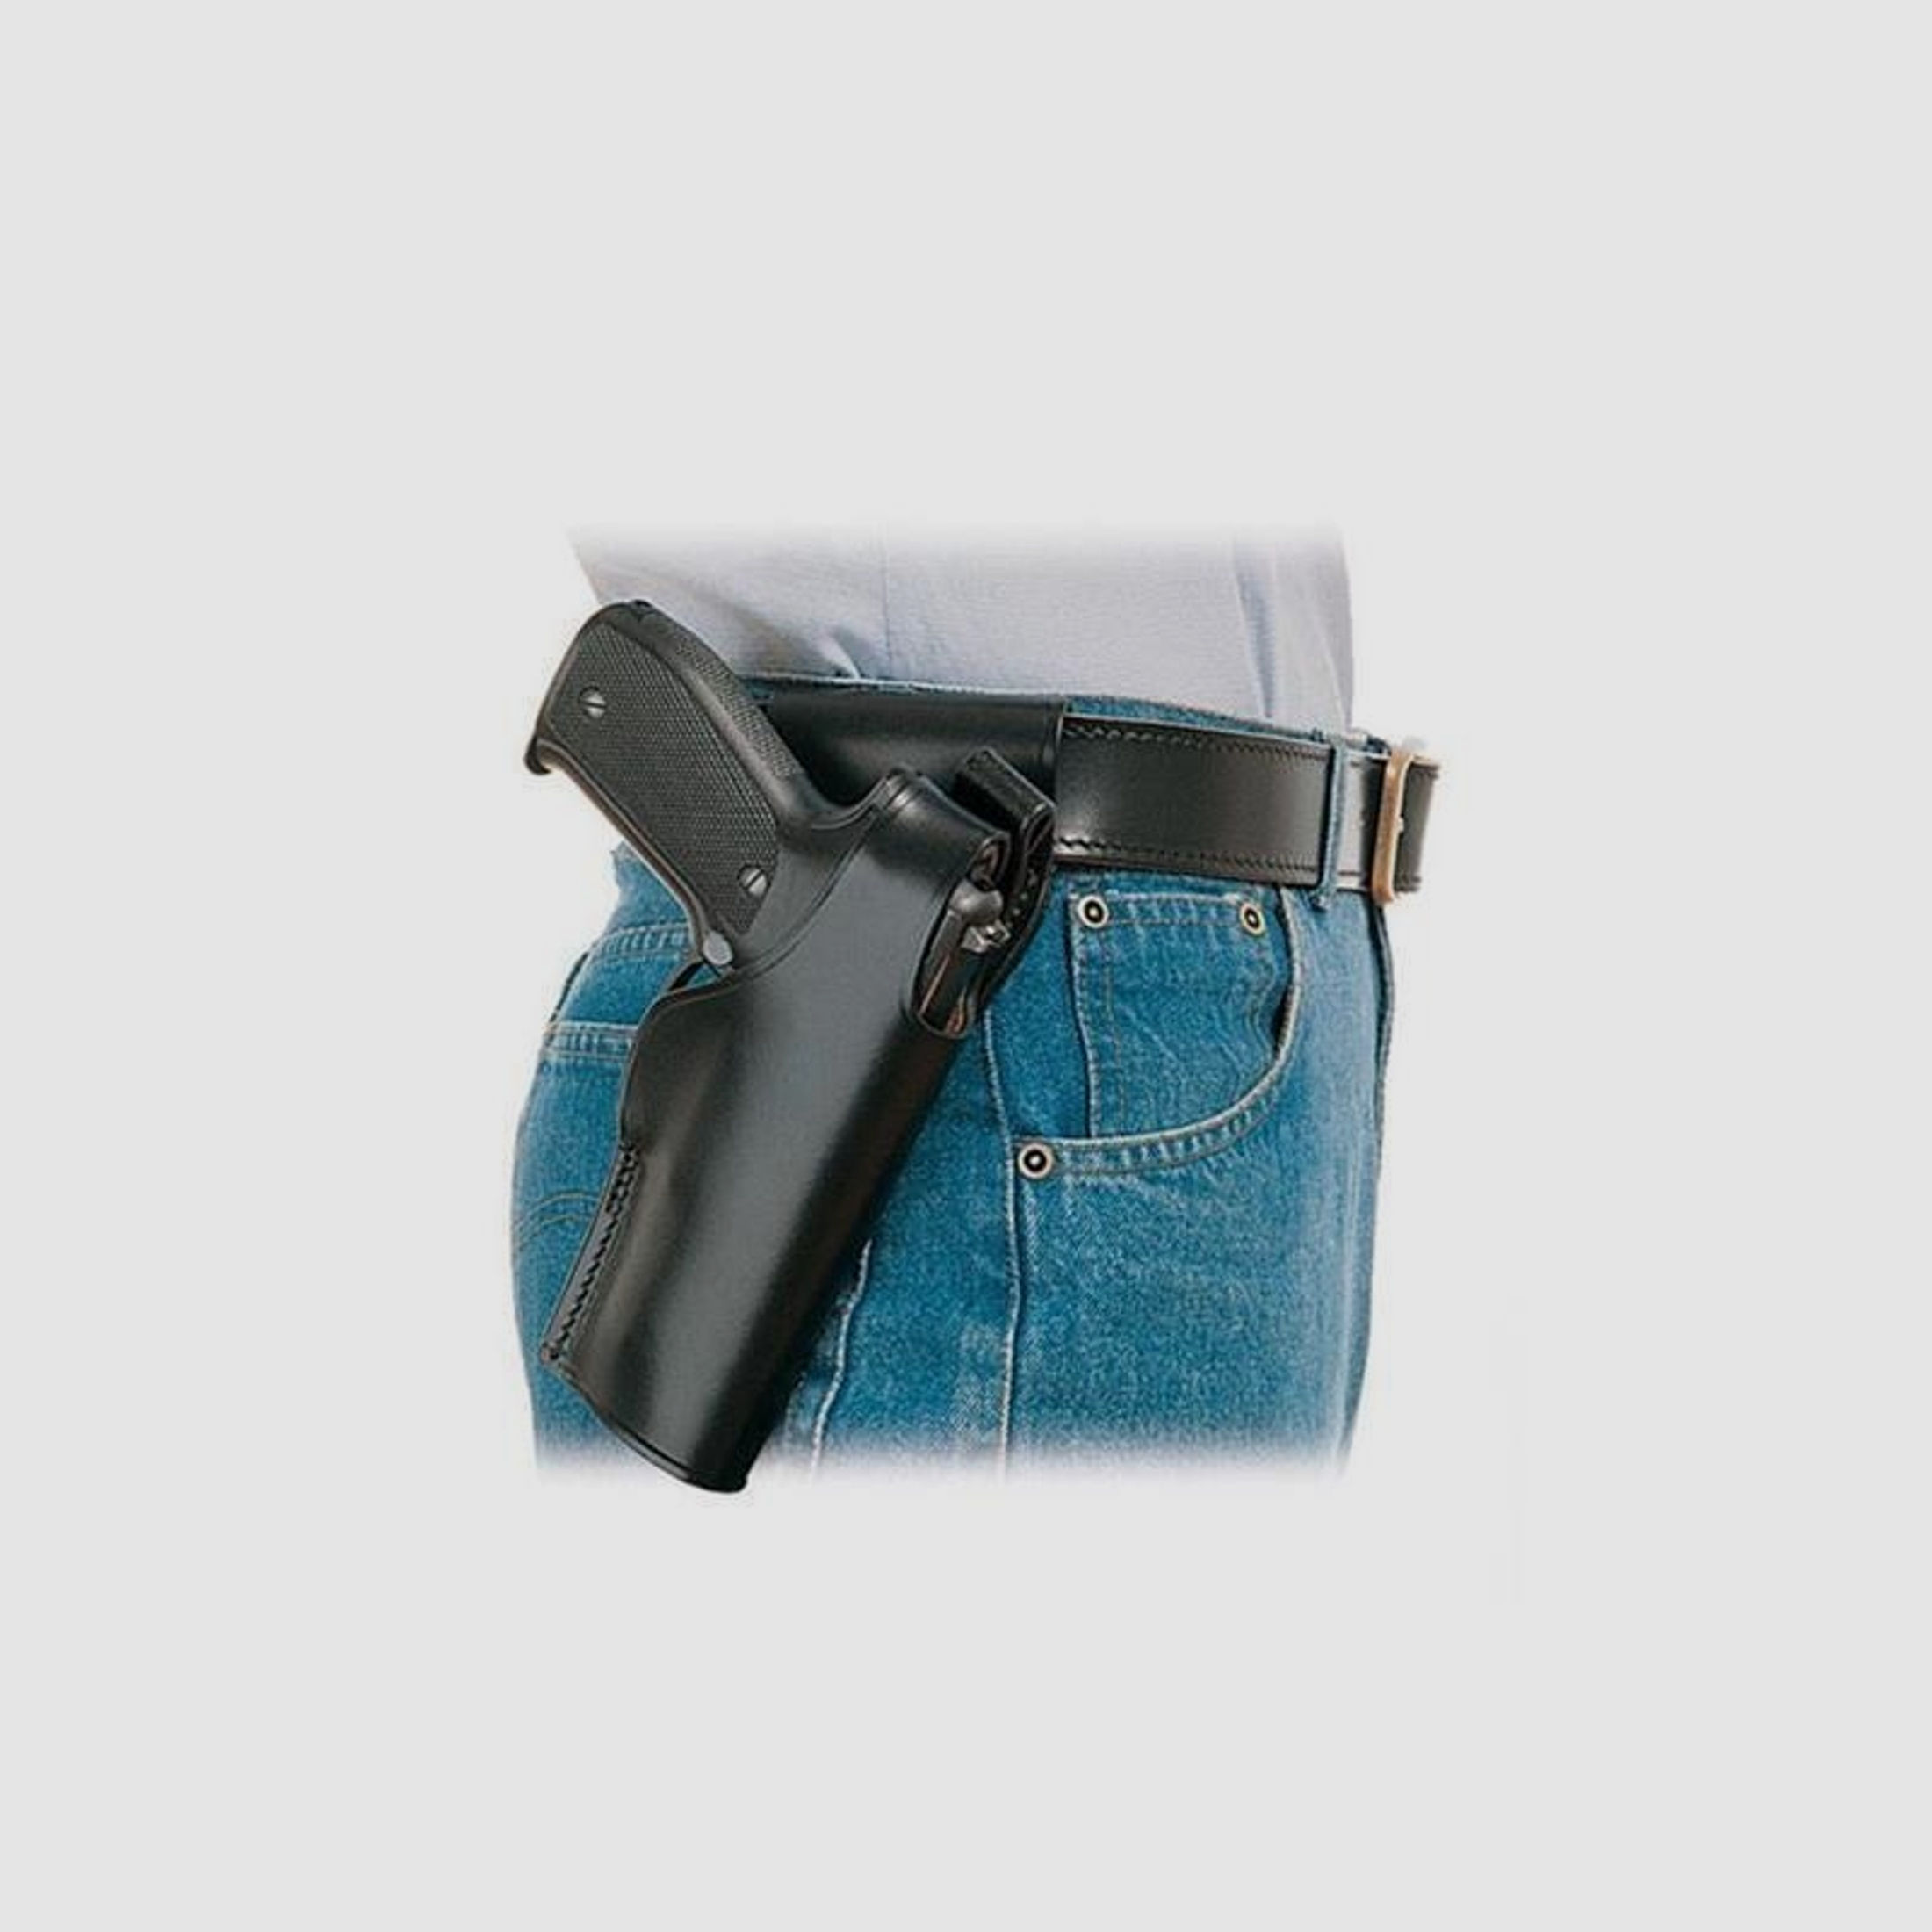 Gürtelholster SPITFIRE Glock 29/30 Braun Linkshänder